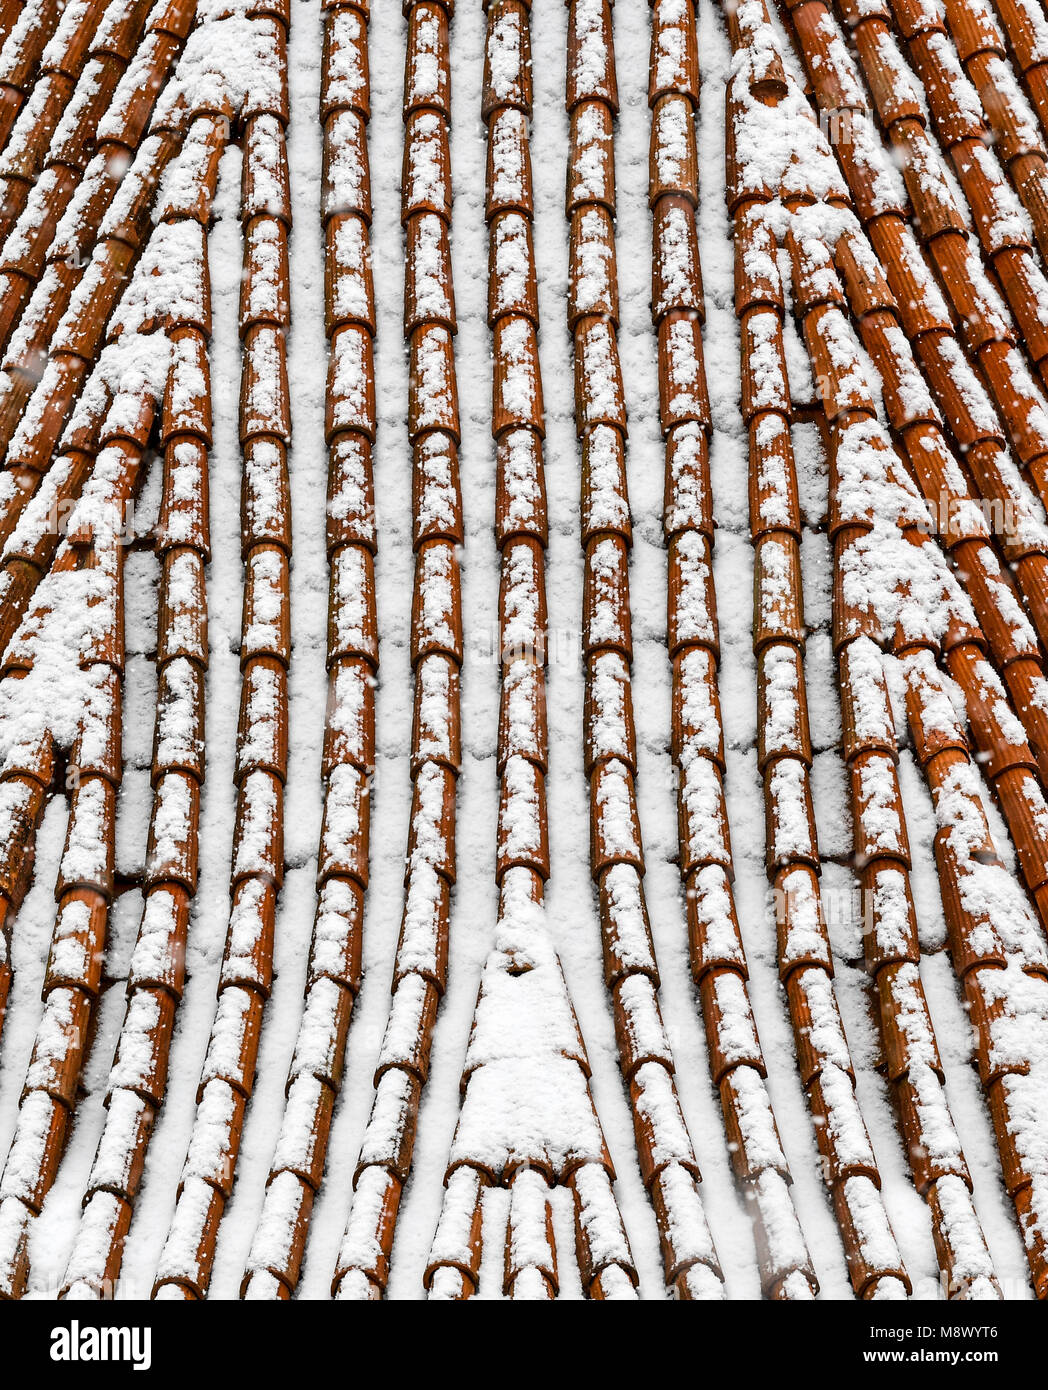 20 mars 2018, l'Allemagne, l'Grosspuerschuetz : un toit de tuiles sur la Szinérváralja près de Kahla est recouverte de neige. Après les fortes chutes de neige Thuringe connaît des températures winterly. Photo : Jens Kalaene/dpa Banque D'Images